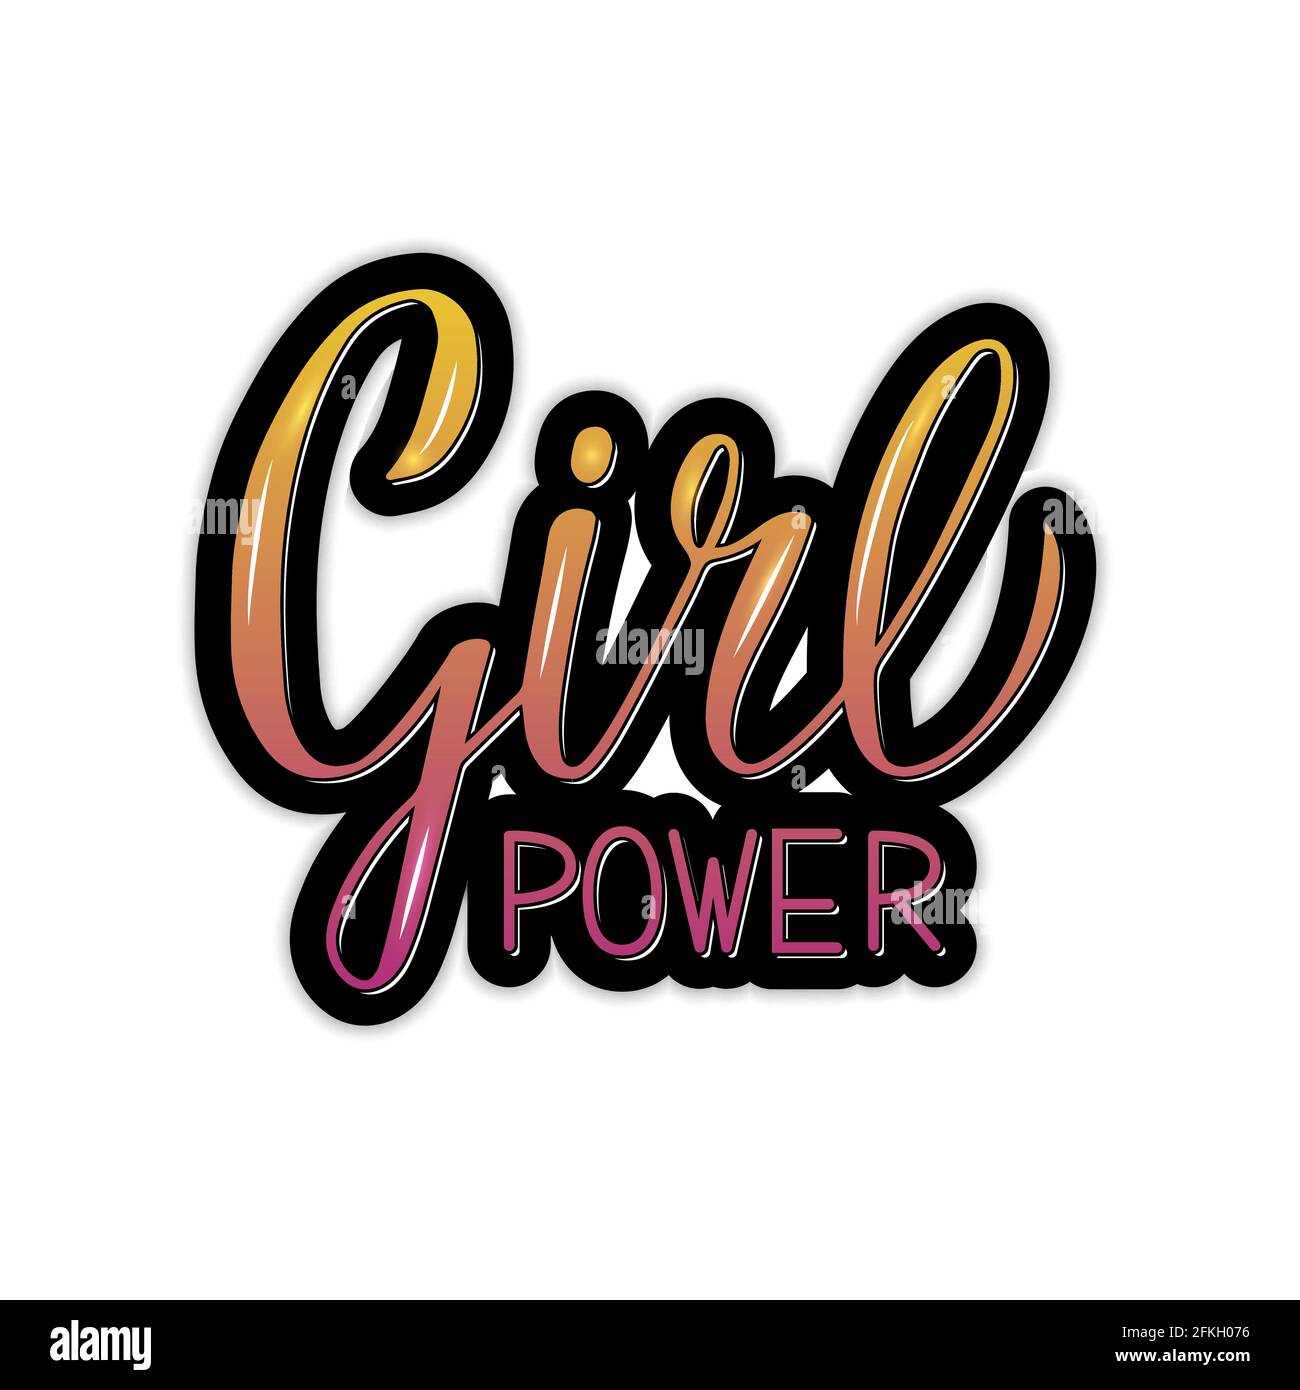 Texte Girl Power Feminist lettrage 3d brillant. Citation inspirée écrite à la main. Notion de féminisme et de droits des femmes. Affiche de motivation typographique. V Illustration de Vecteur